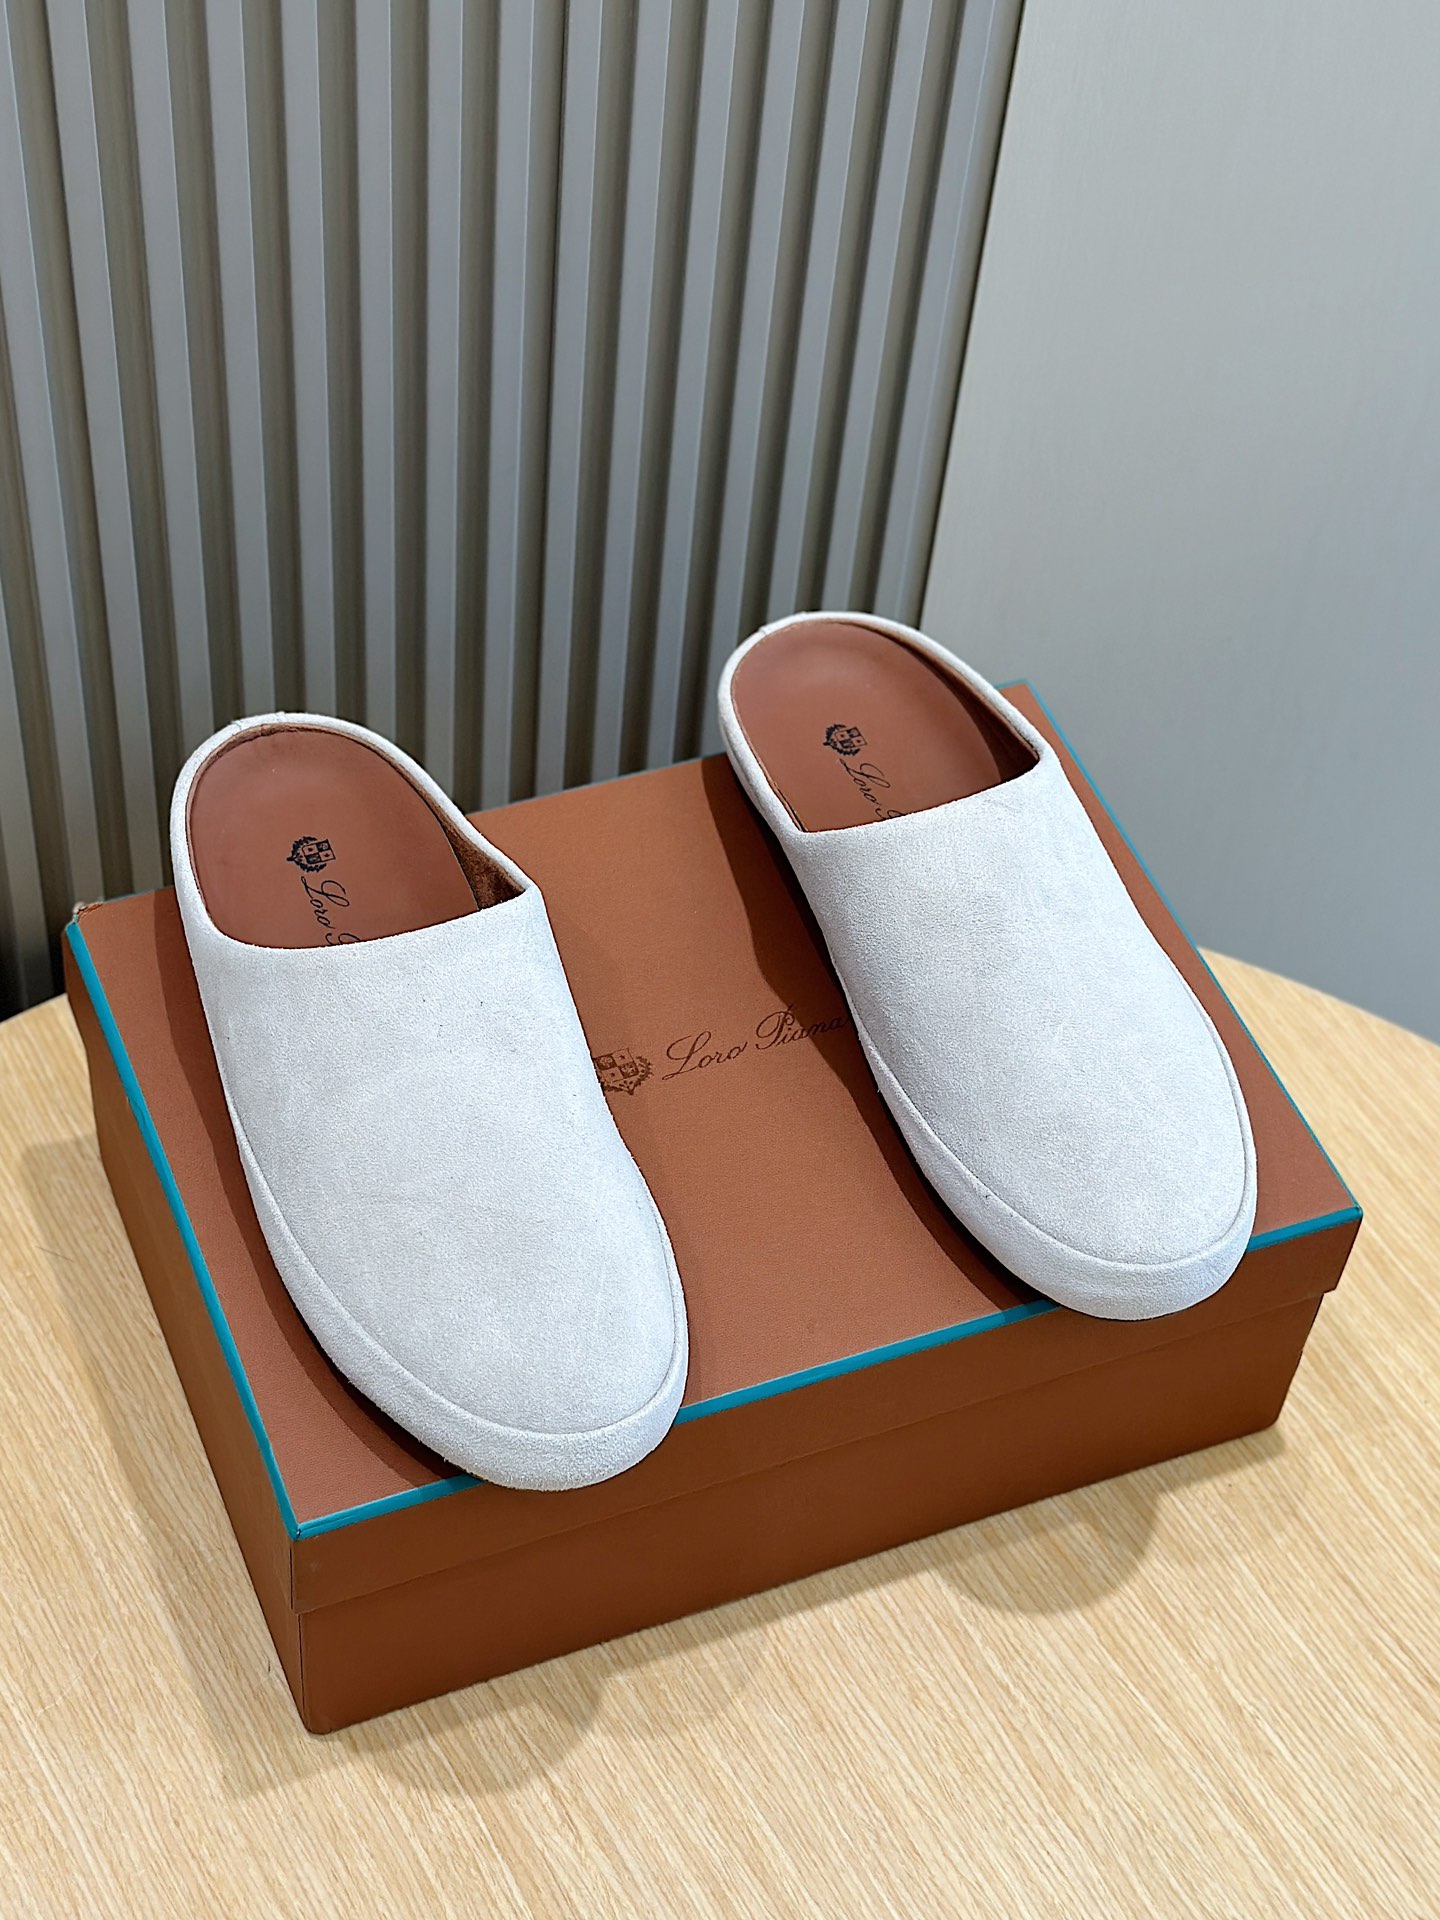 העתק מעצבי חנויות
 Loro Piana נעליים נעלי בית קיץ מעצב זול
 קווייד Lambskin גומא עור כבשים רגיל